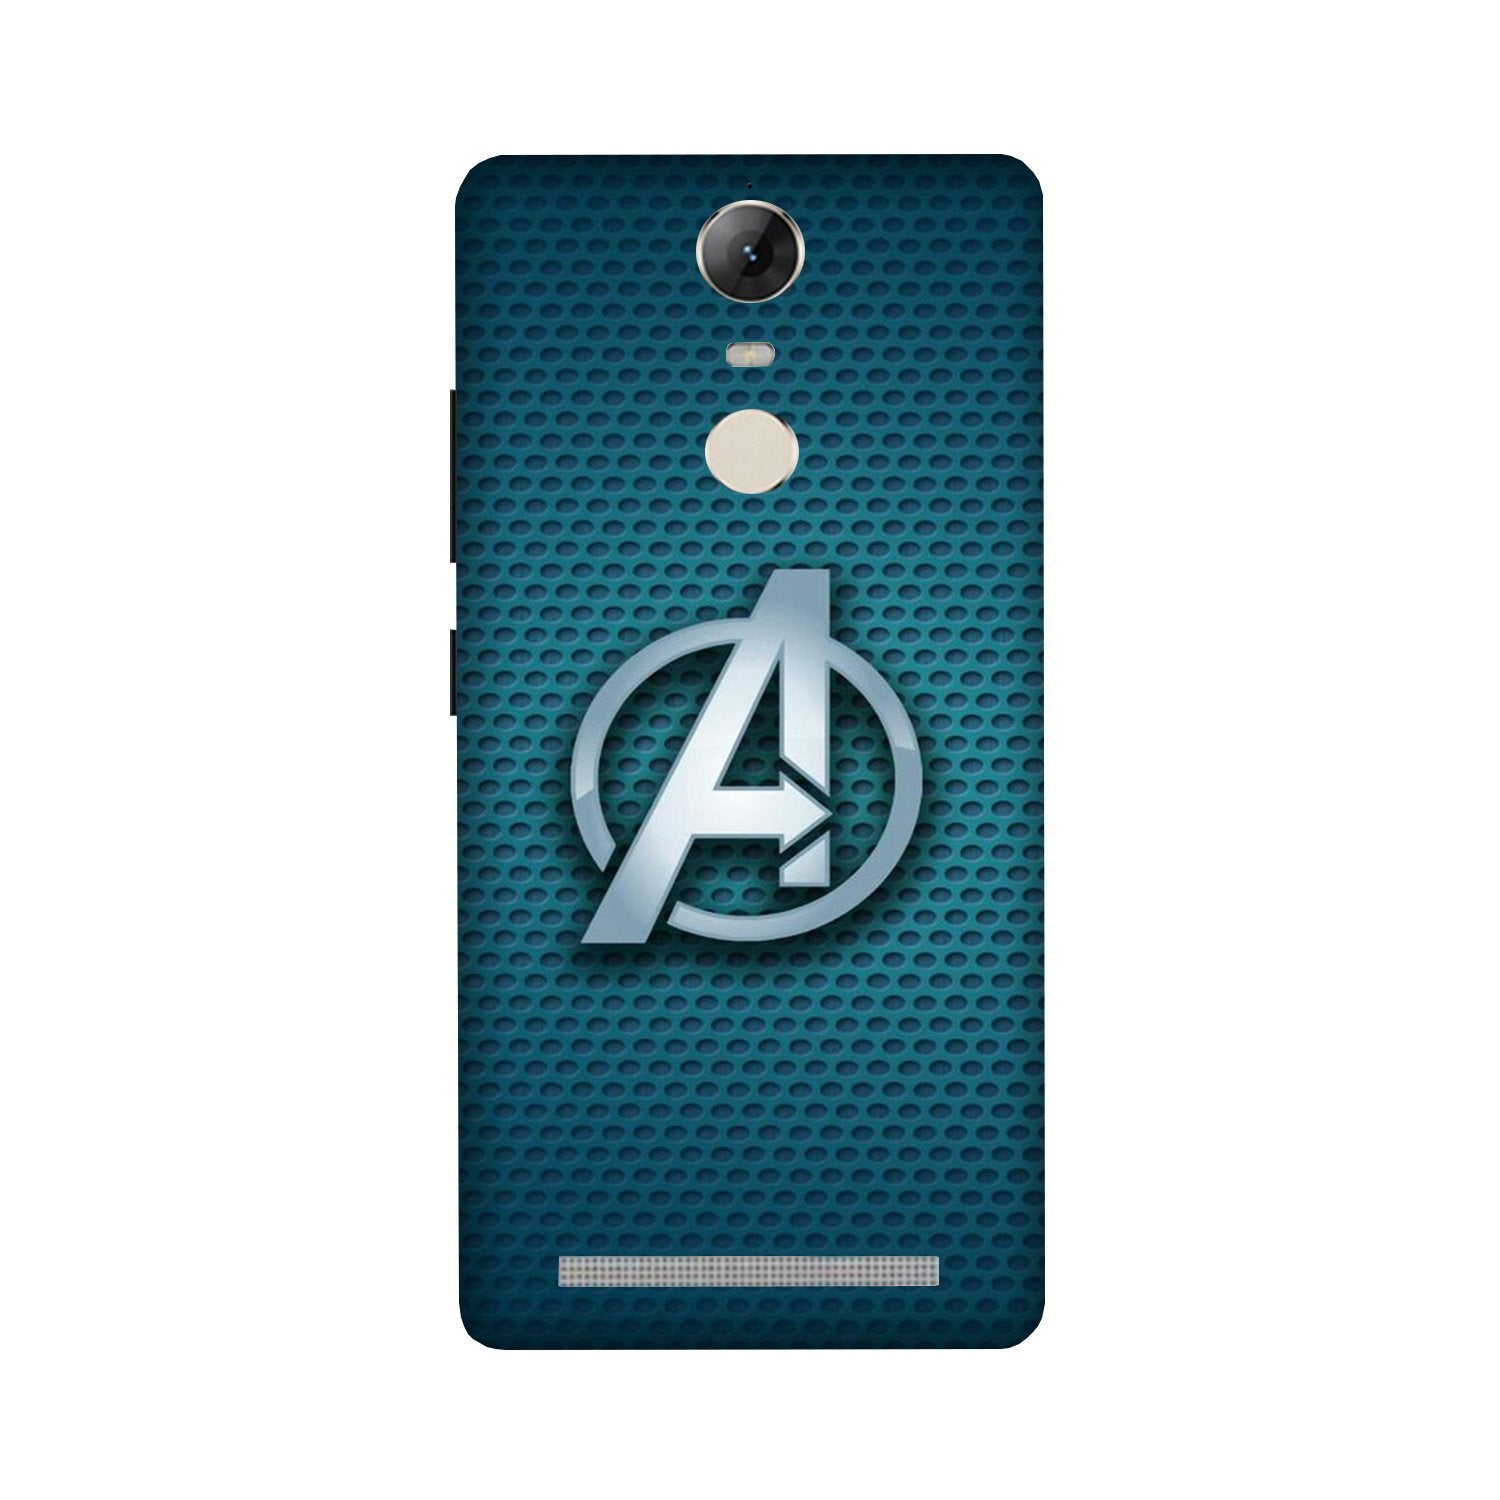 Avengers Case for Lenovo Vibe K5 Note (Design No. 246)